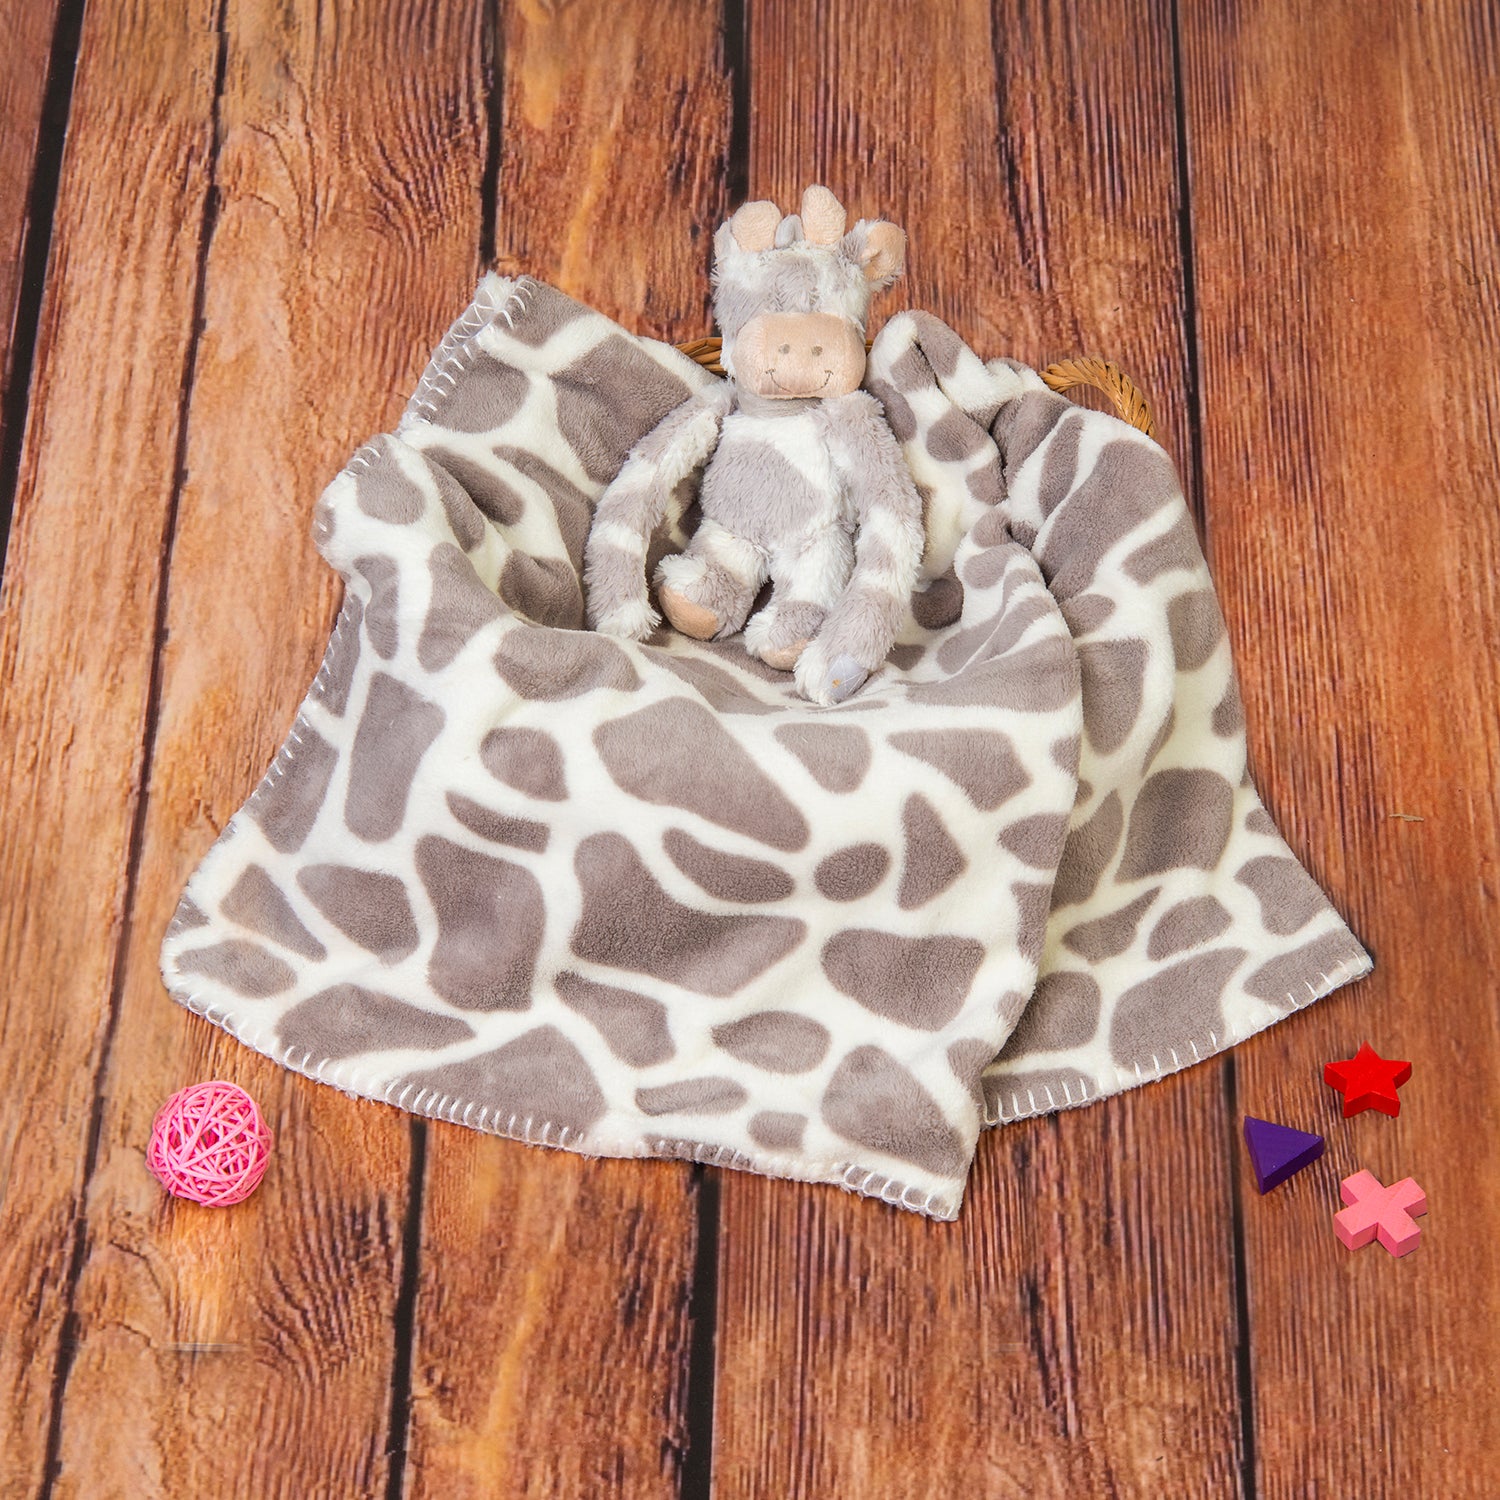 Baby Moo Giraffe Spots Soft Cozy Plush Toy Blanket Grey